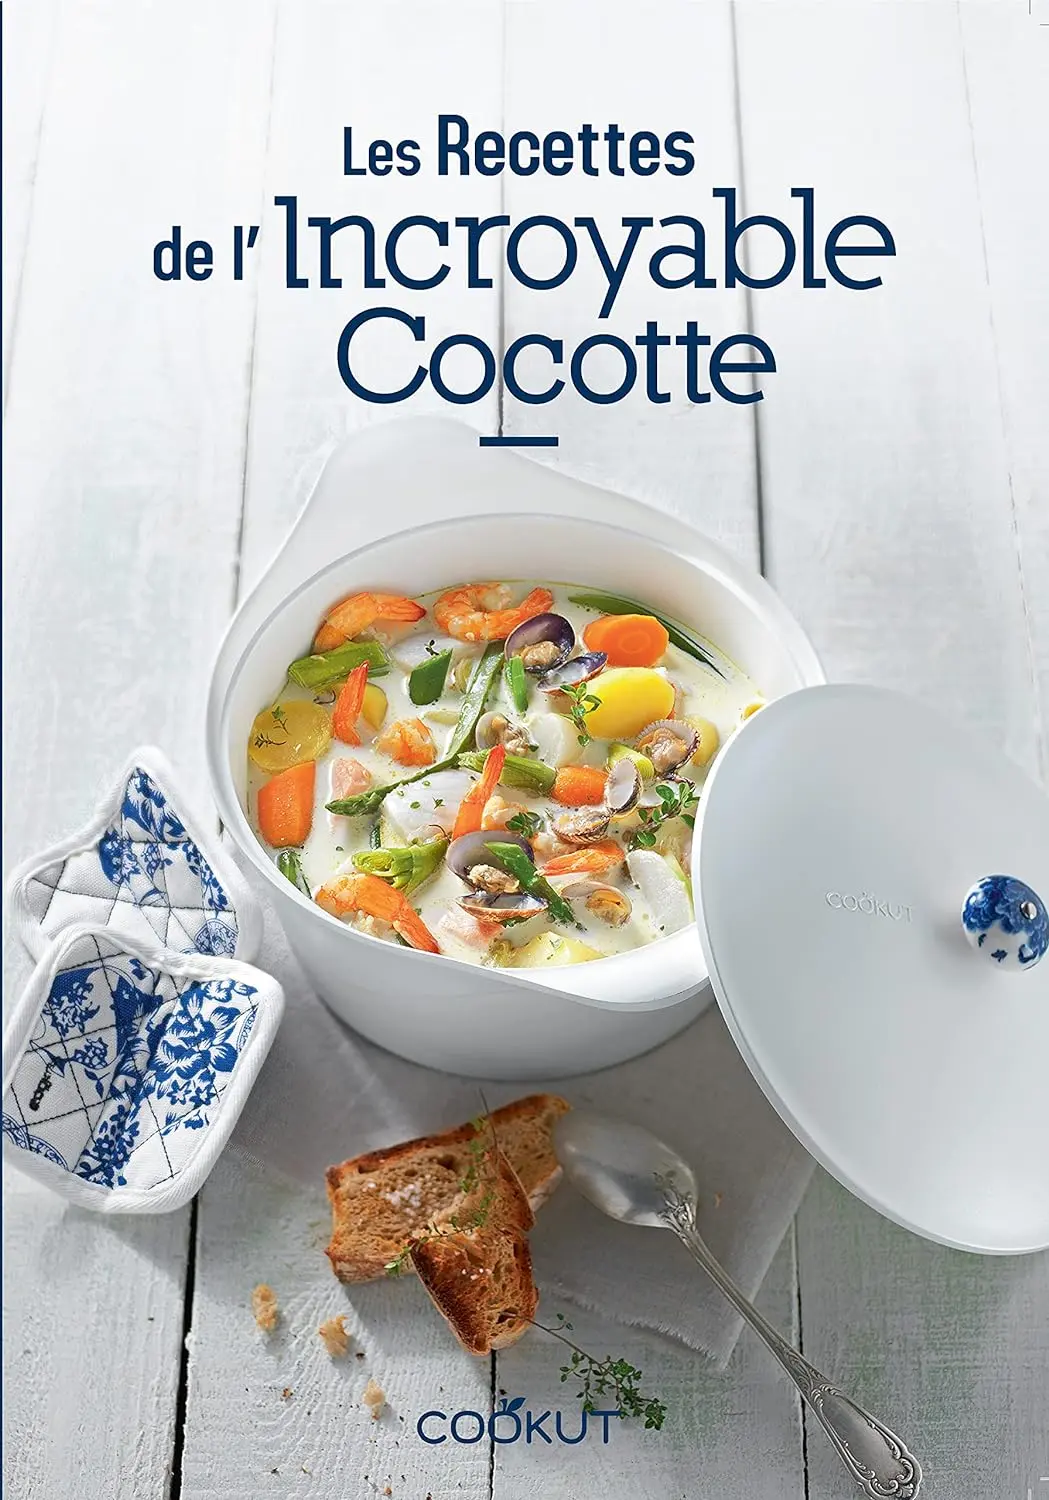 Les recettes de l'Incroyable Cocotte Cookut